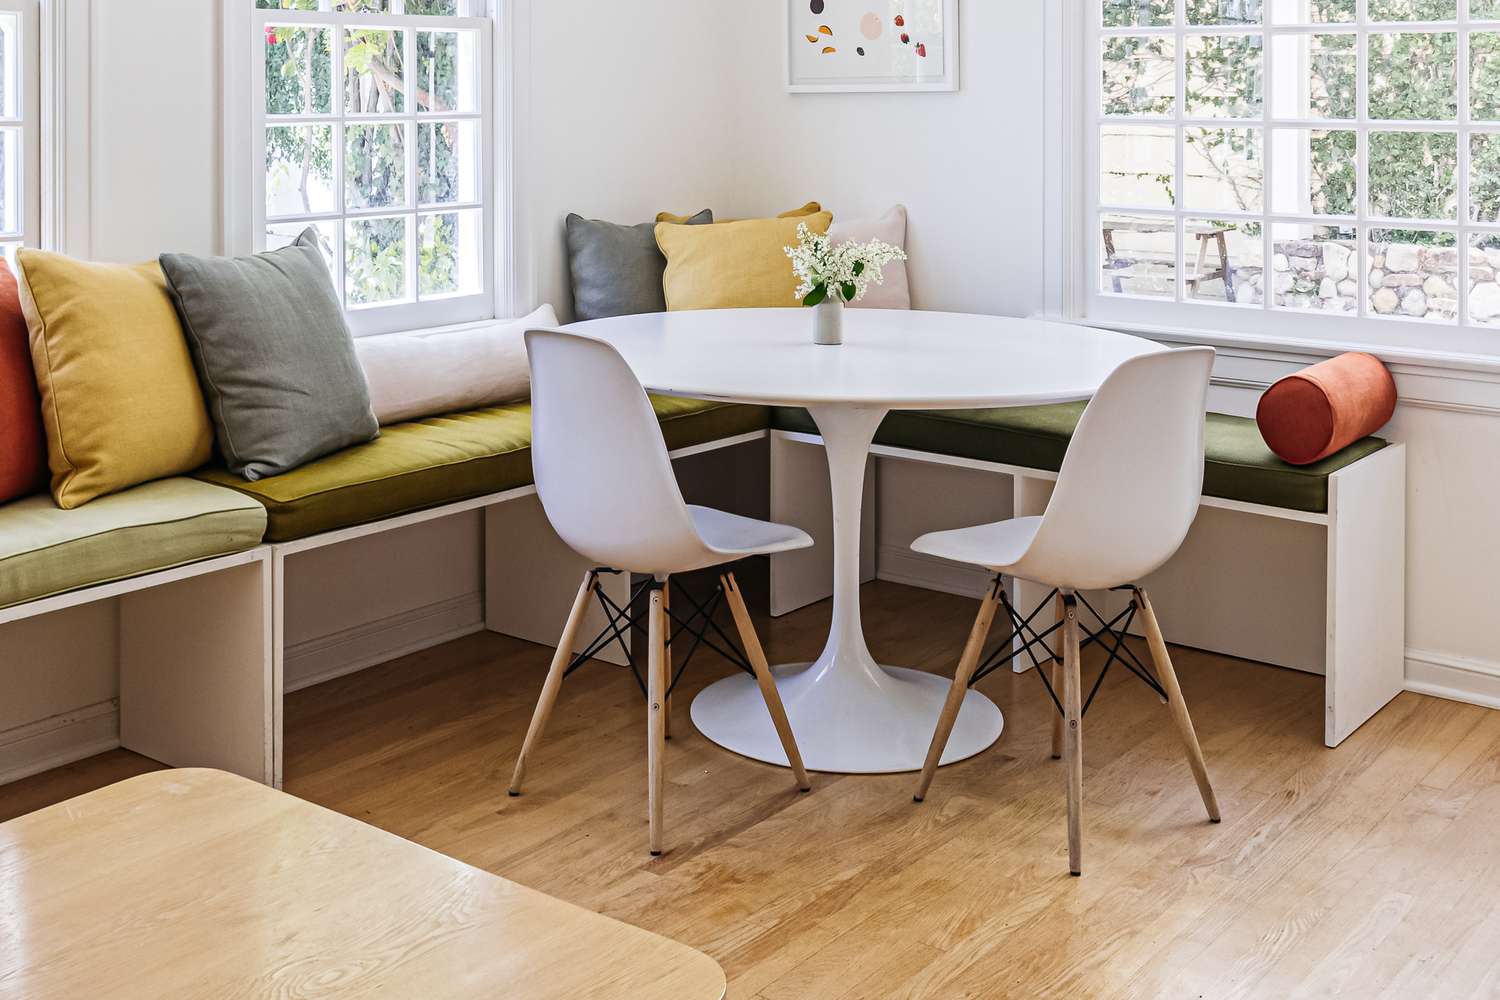 Weißer Saarinen-Tisch mit zwei Stühlen und Fensterecke mit Bänken